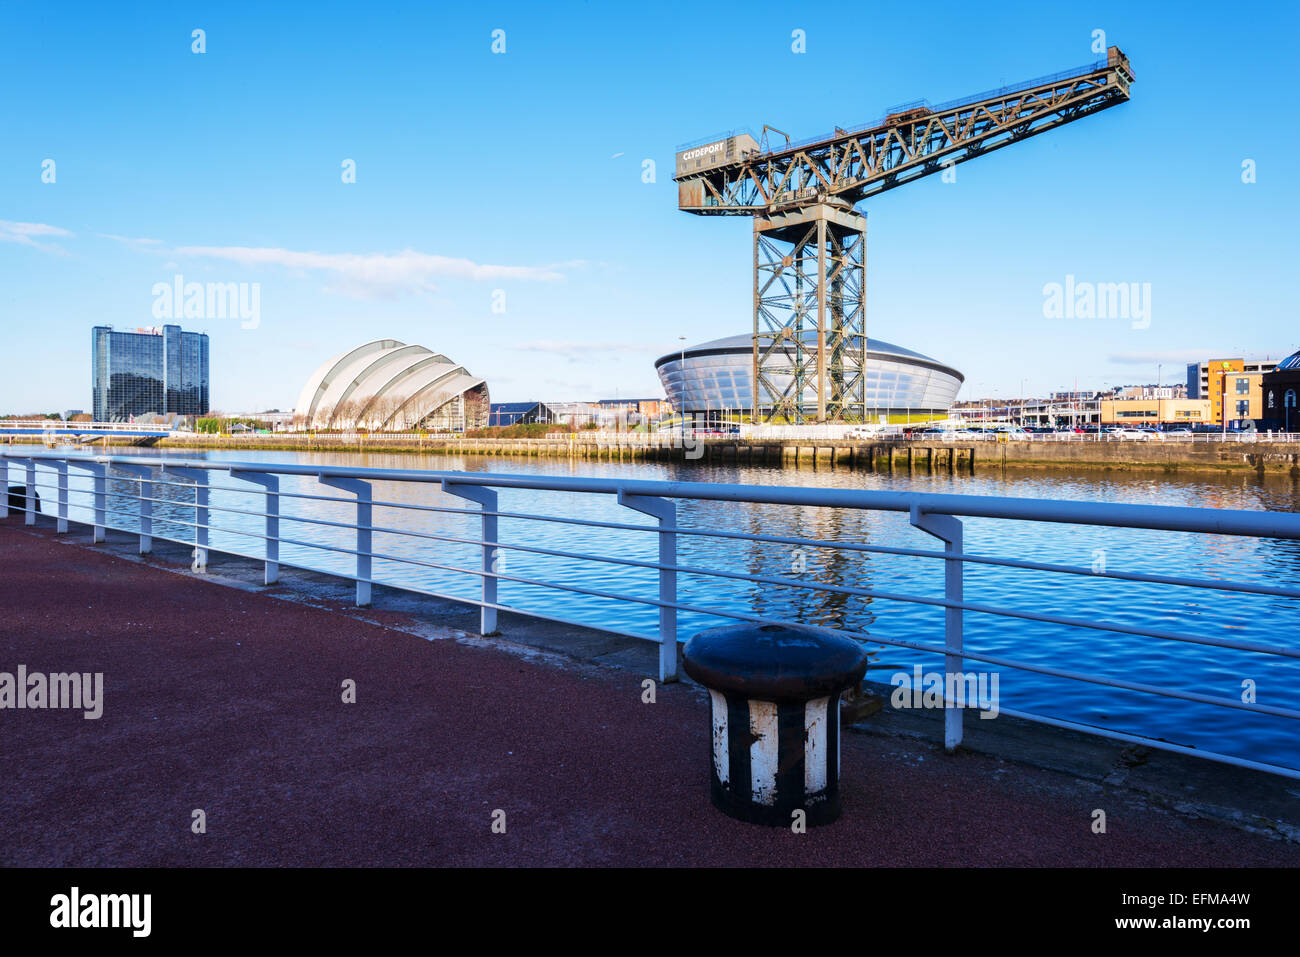 Promenade à la rivière Clyde à l'Hydro, l'Armadillo (SECC), il Finnieston Crane et la sonnerie Bridge, Glasgow, Ecosse, Royaume-Uni. Banque D'Images